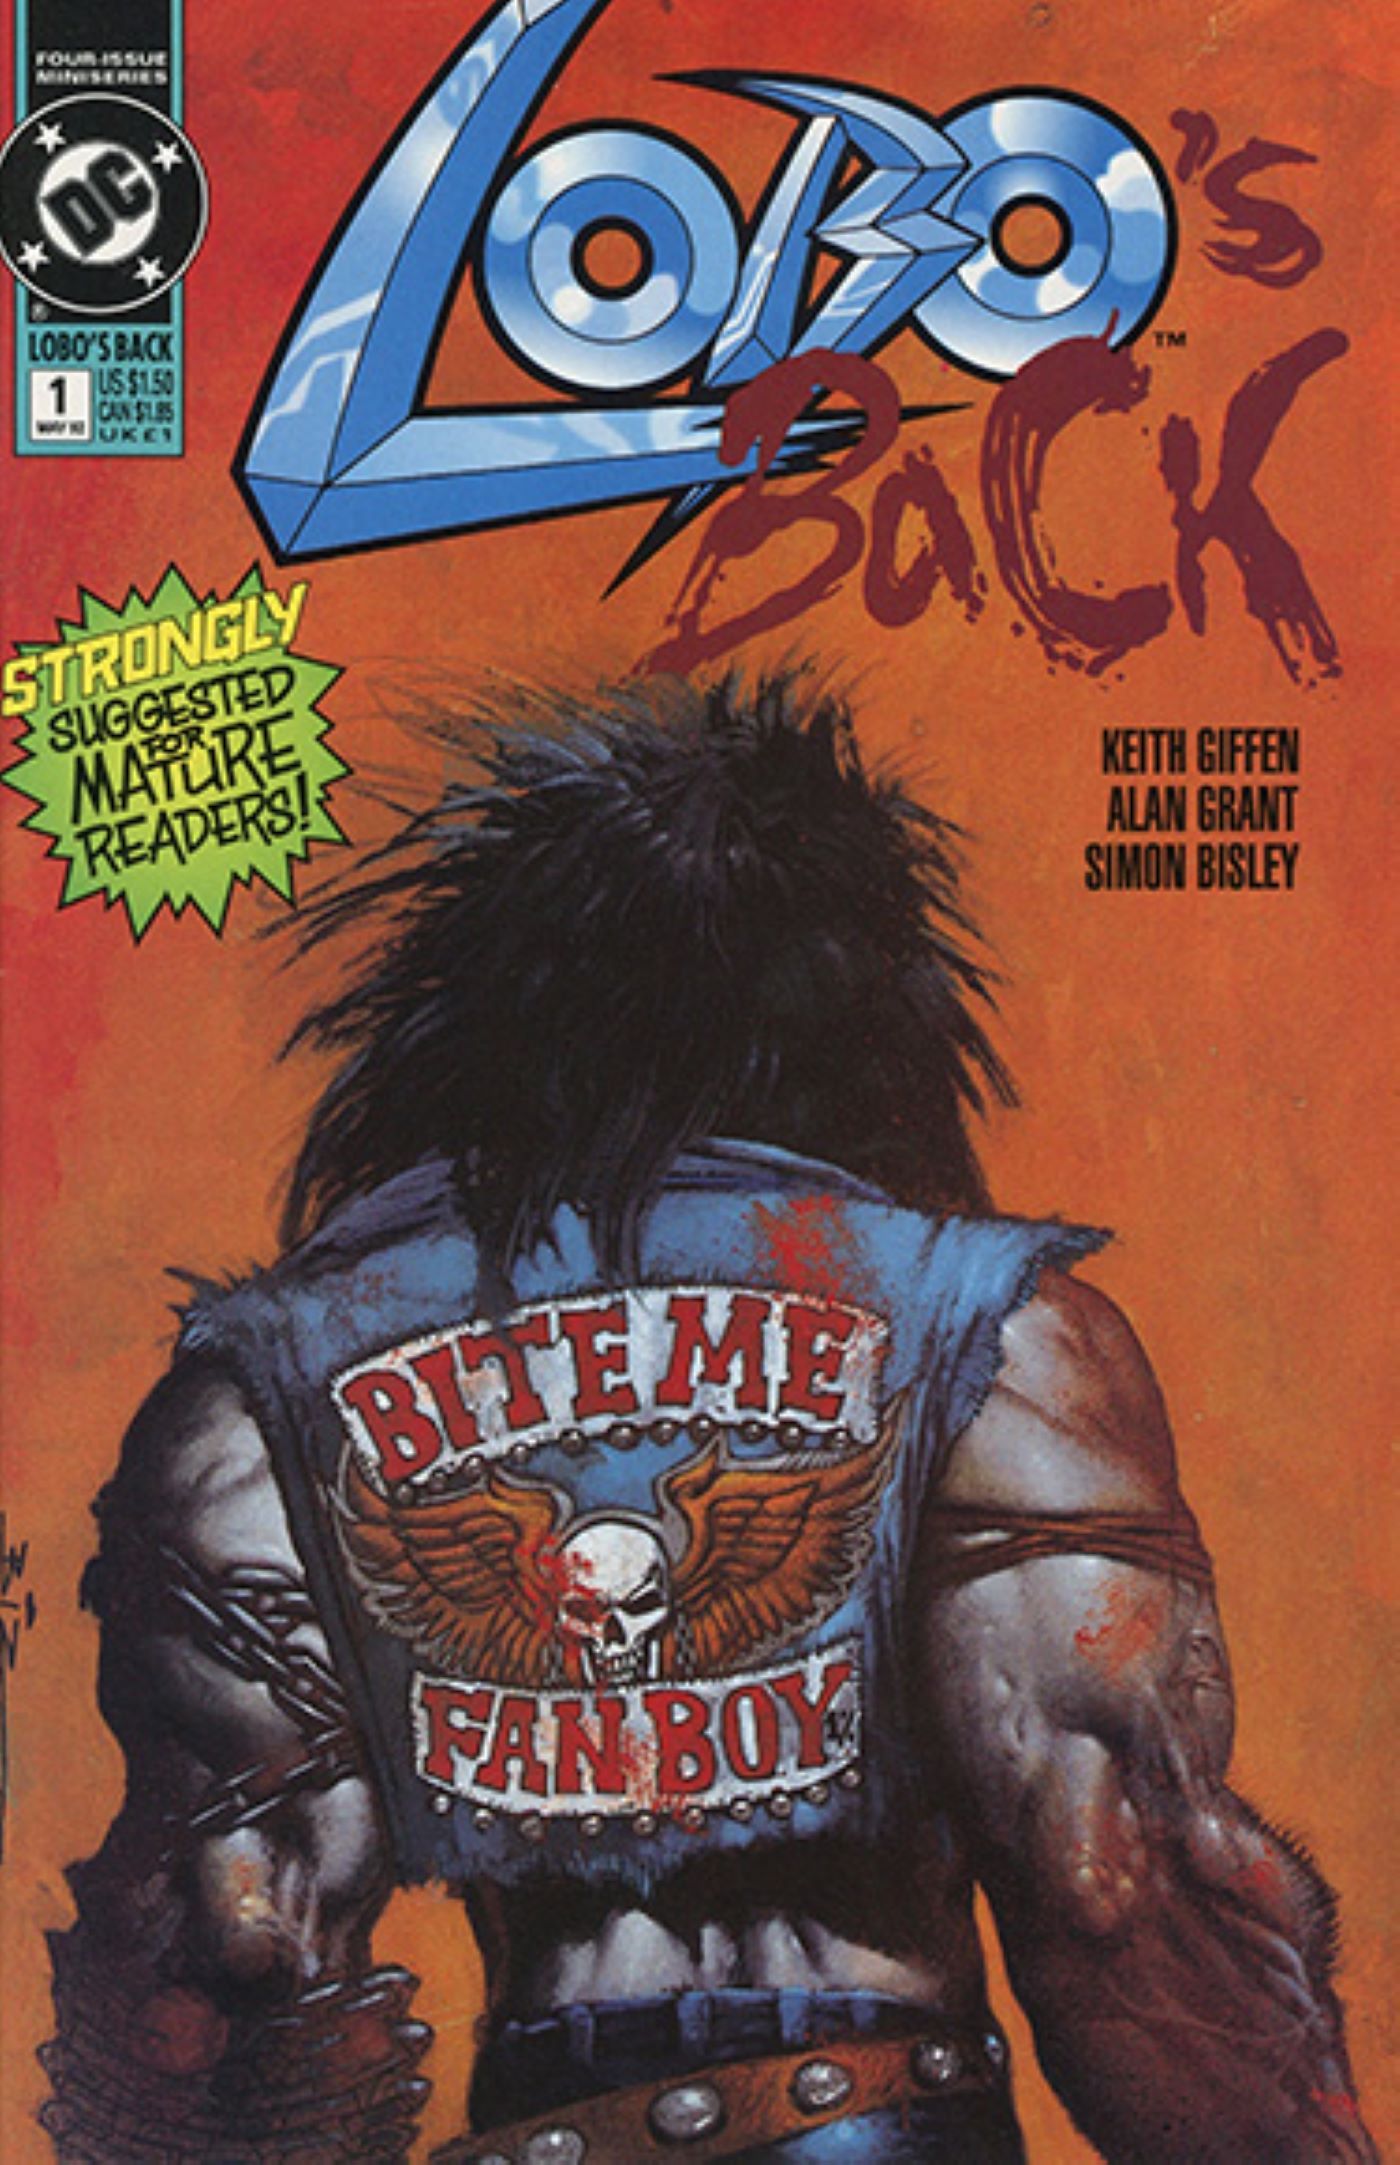 Capa da Back #1 do Lobo com ele vestindo sua jaqueta jeans morde-me fanboy